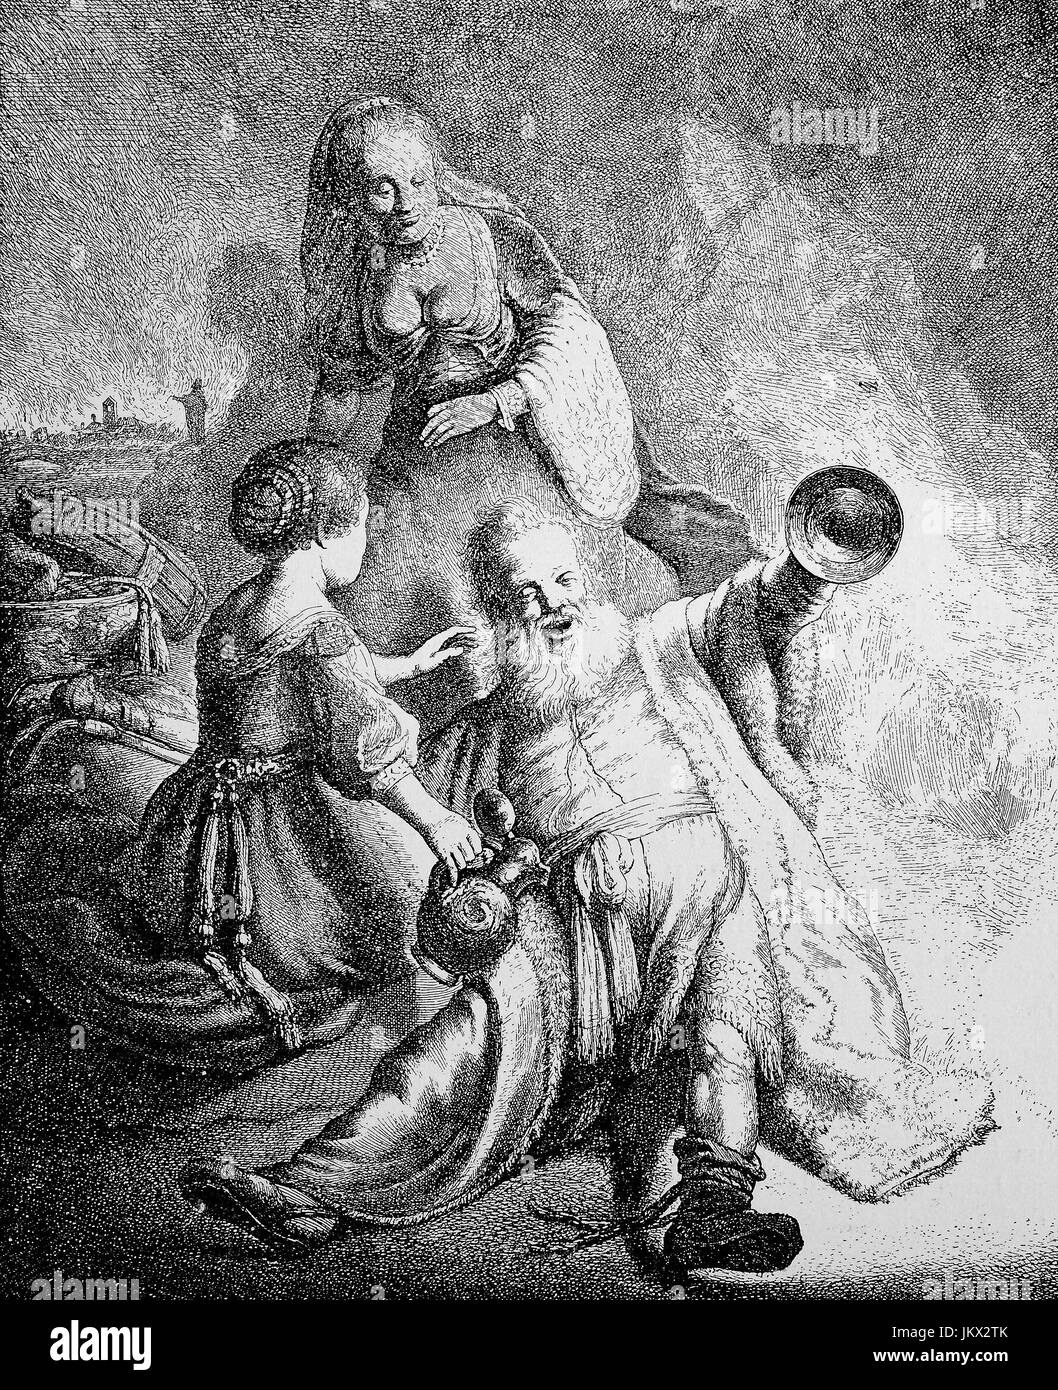 Miglioramento digitale:, Il drunken Loth, un ubriaco con due signore, incisione su rame di J. G. van Vliet dopo l'originale di Rembrandt, 1631, lotto era un patriarca nel Libro biblico della Genesi, la pubblicazione a partire dall'anno 1882 Foto Stock